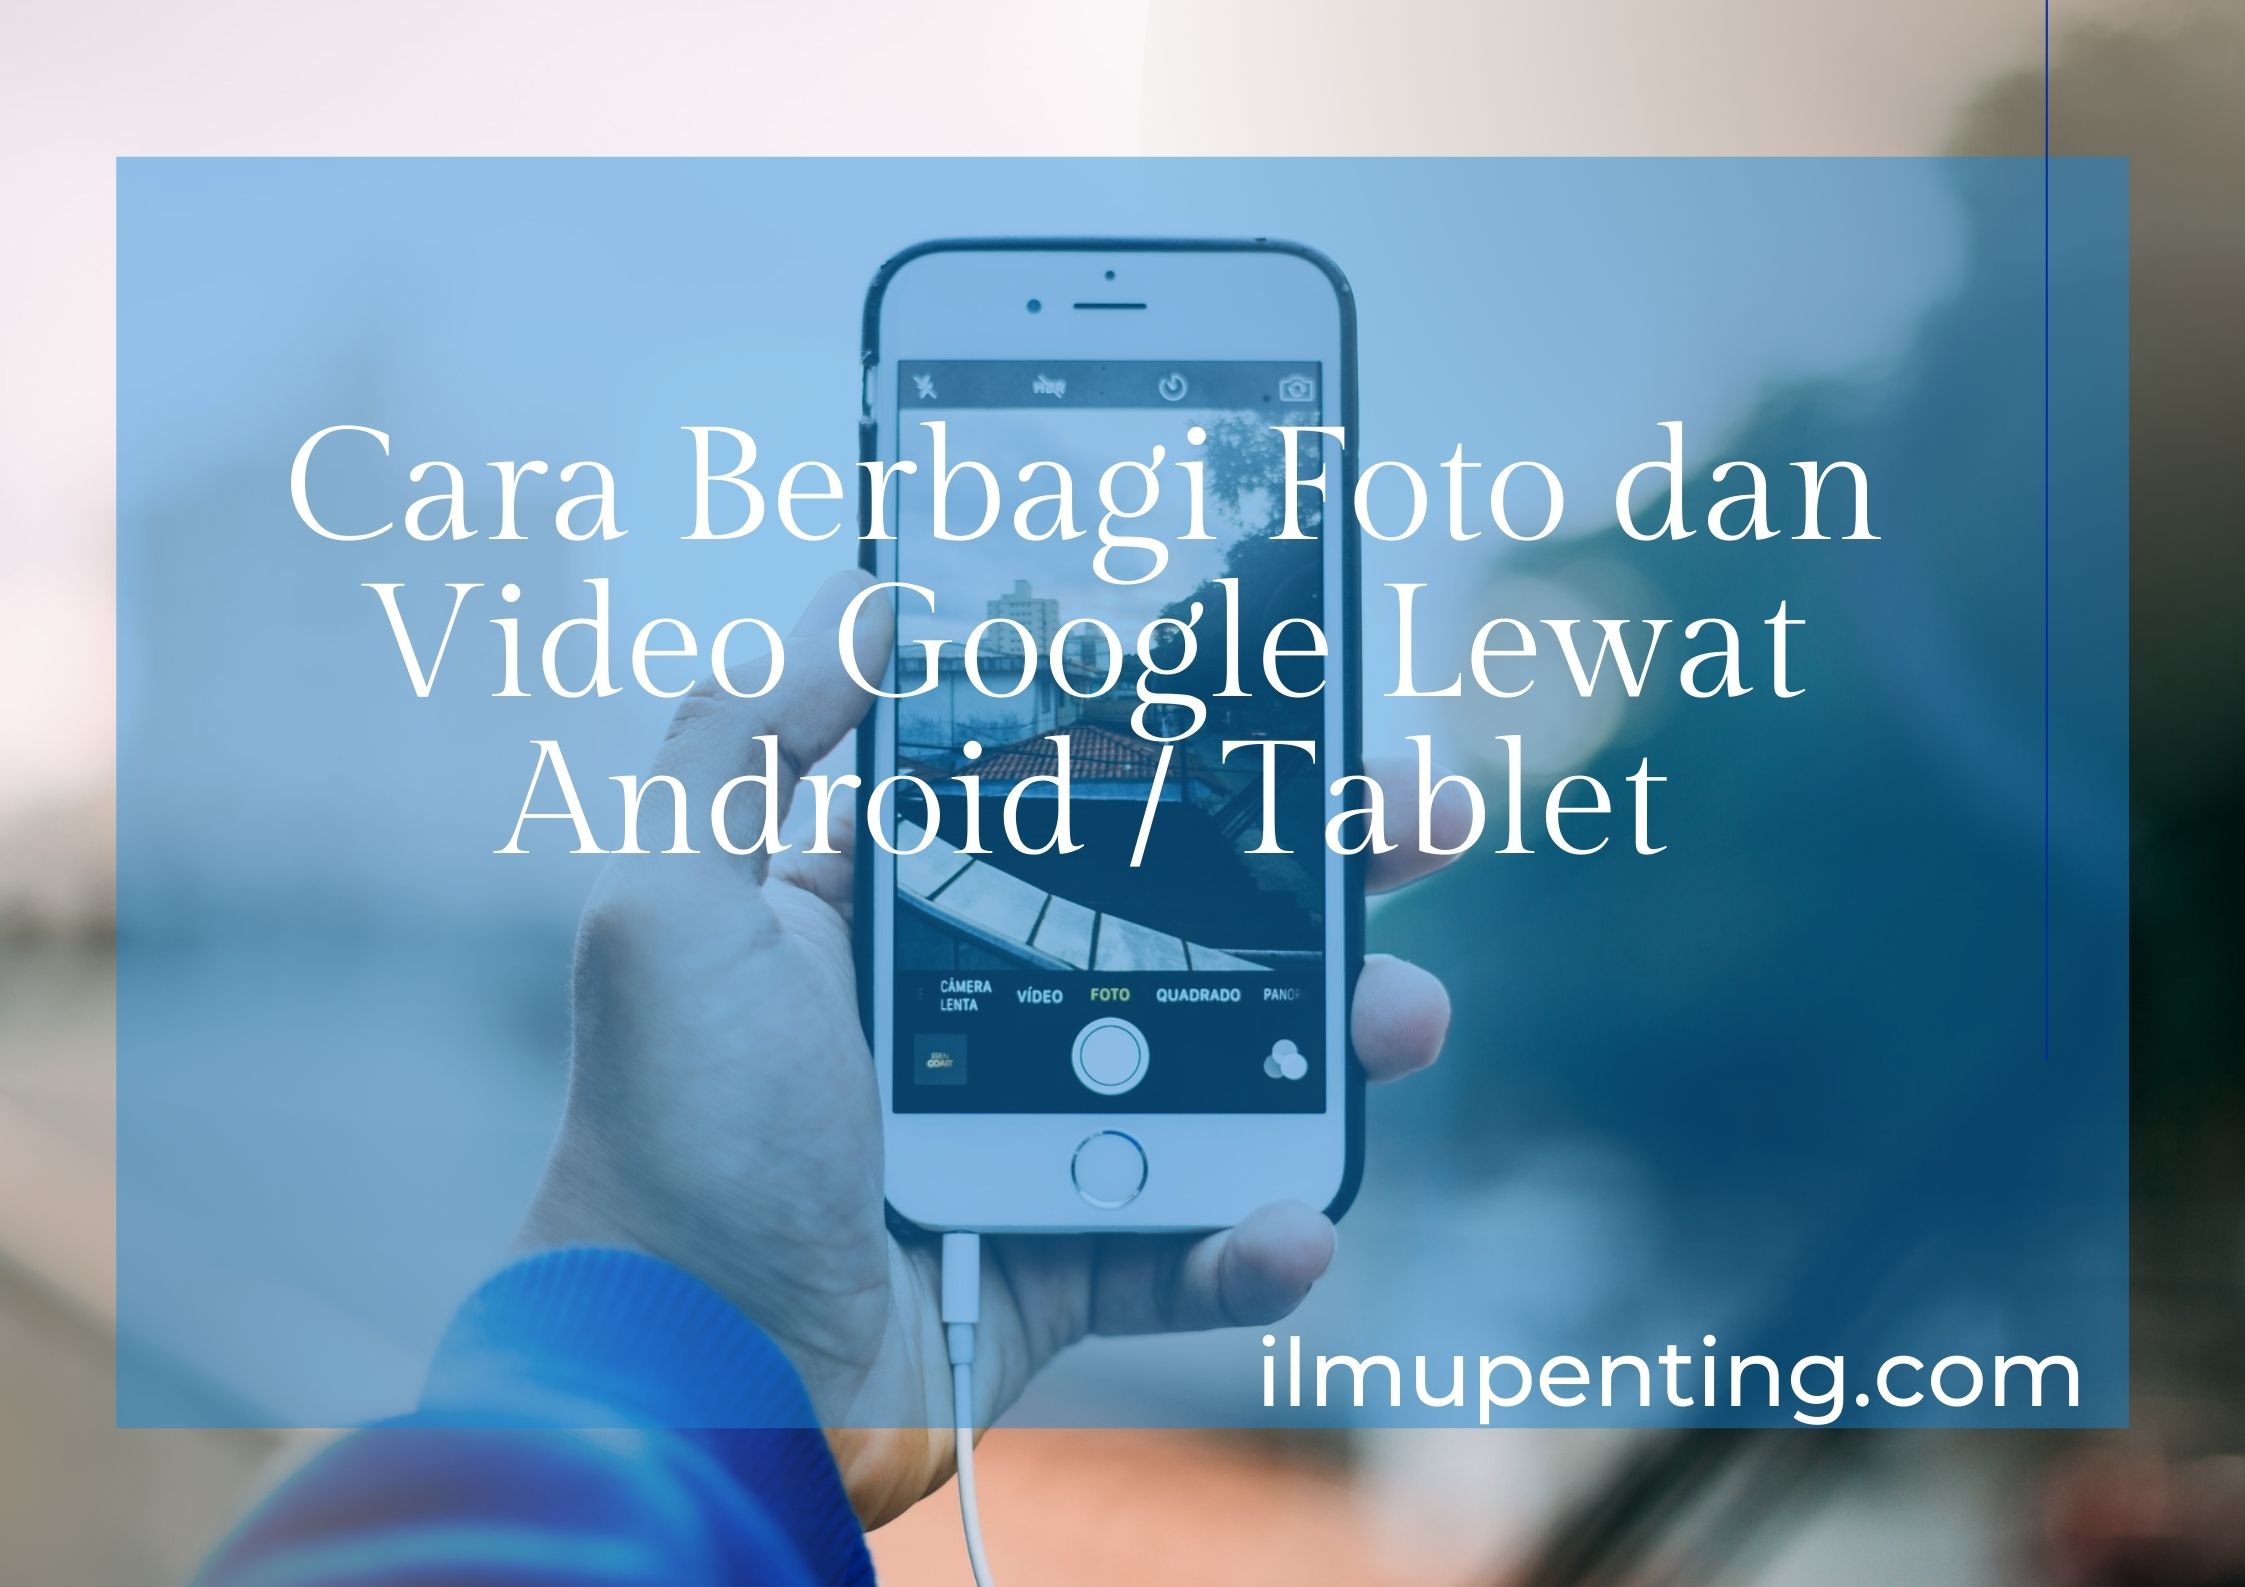 Cara Berbagi Foto dan Video Google Lewat Android / Tablet